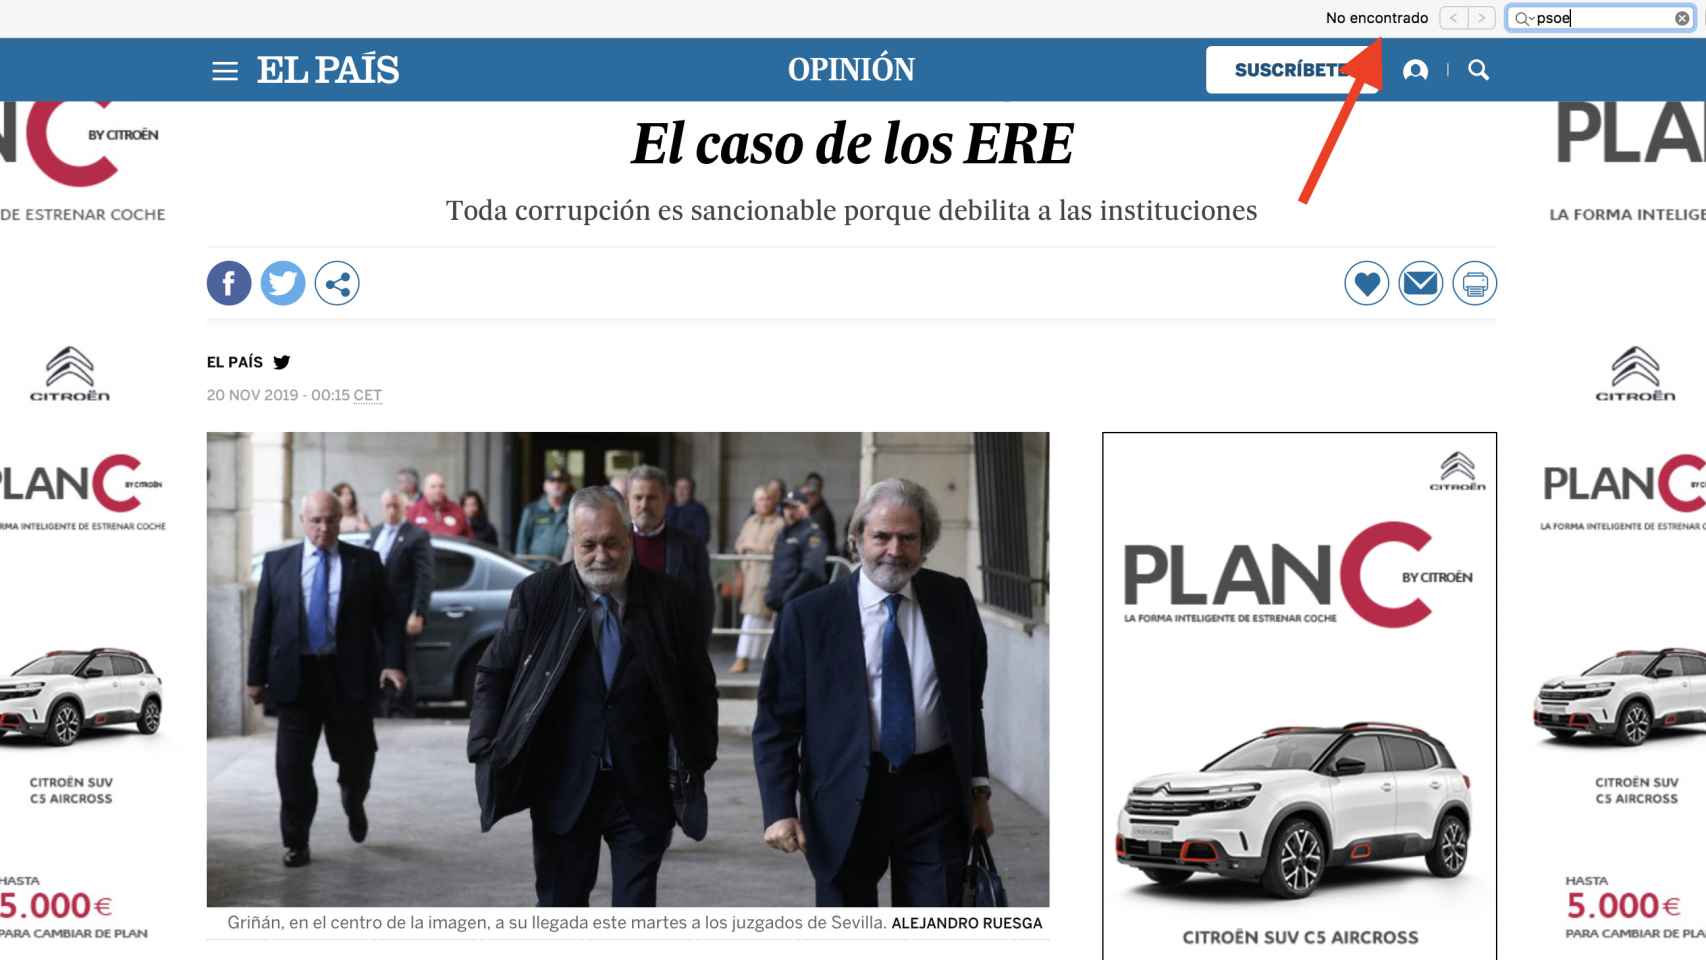 Resultado de la búsqueda de la palabra PSOE en el editorial de El País: cero resultados.